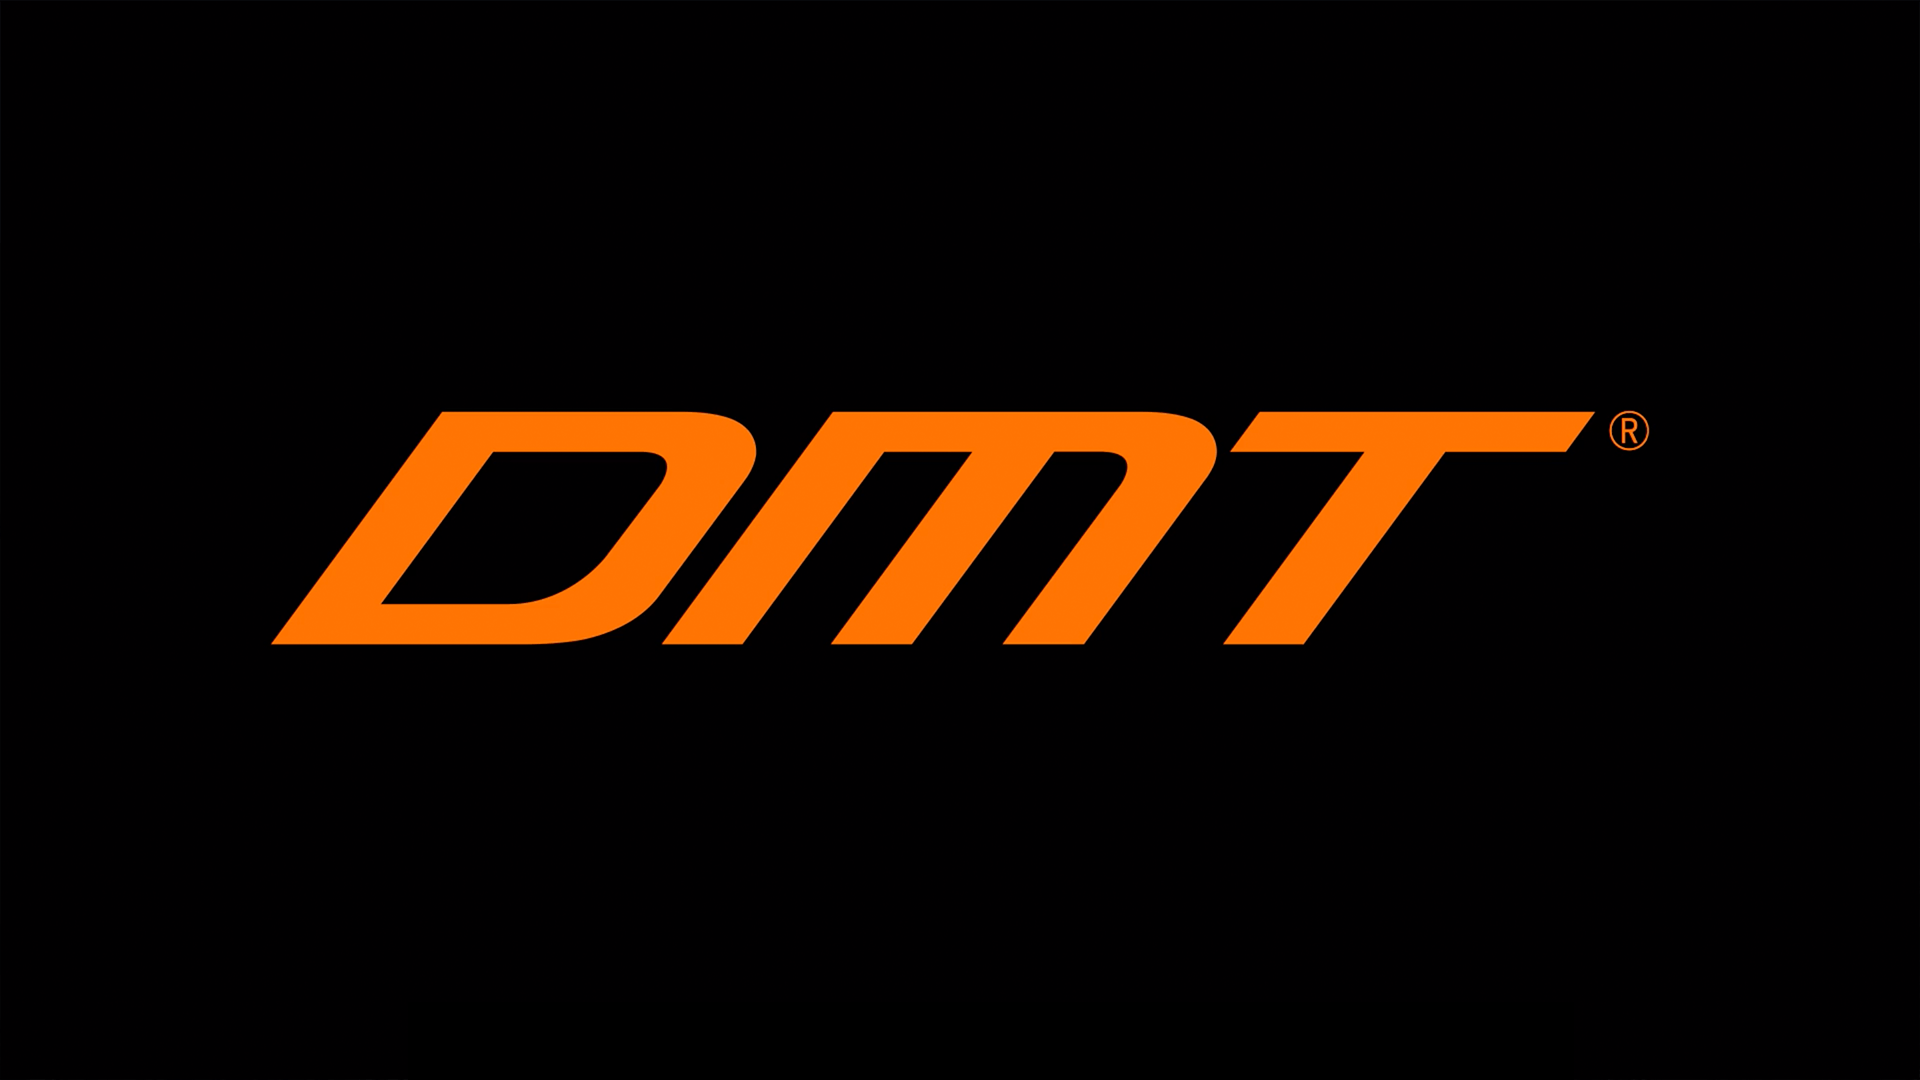 dmt-logo